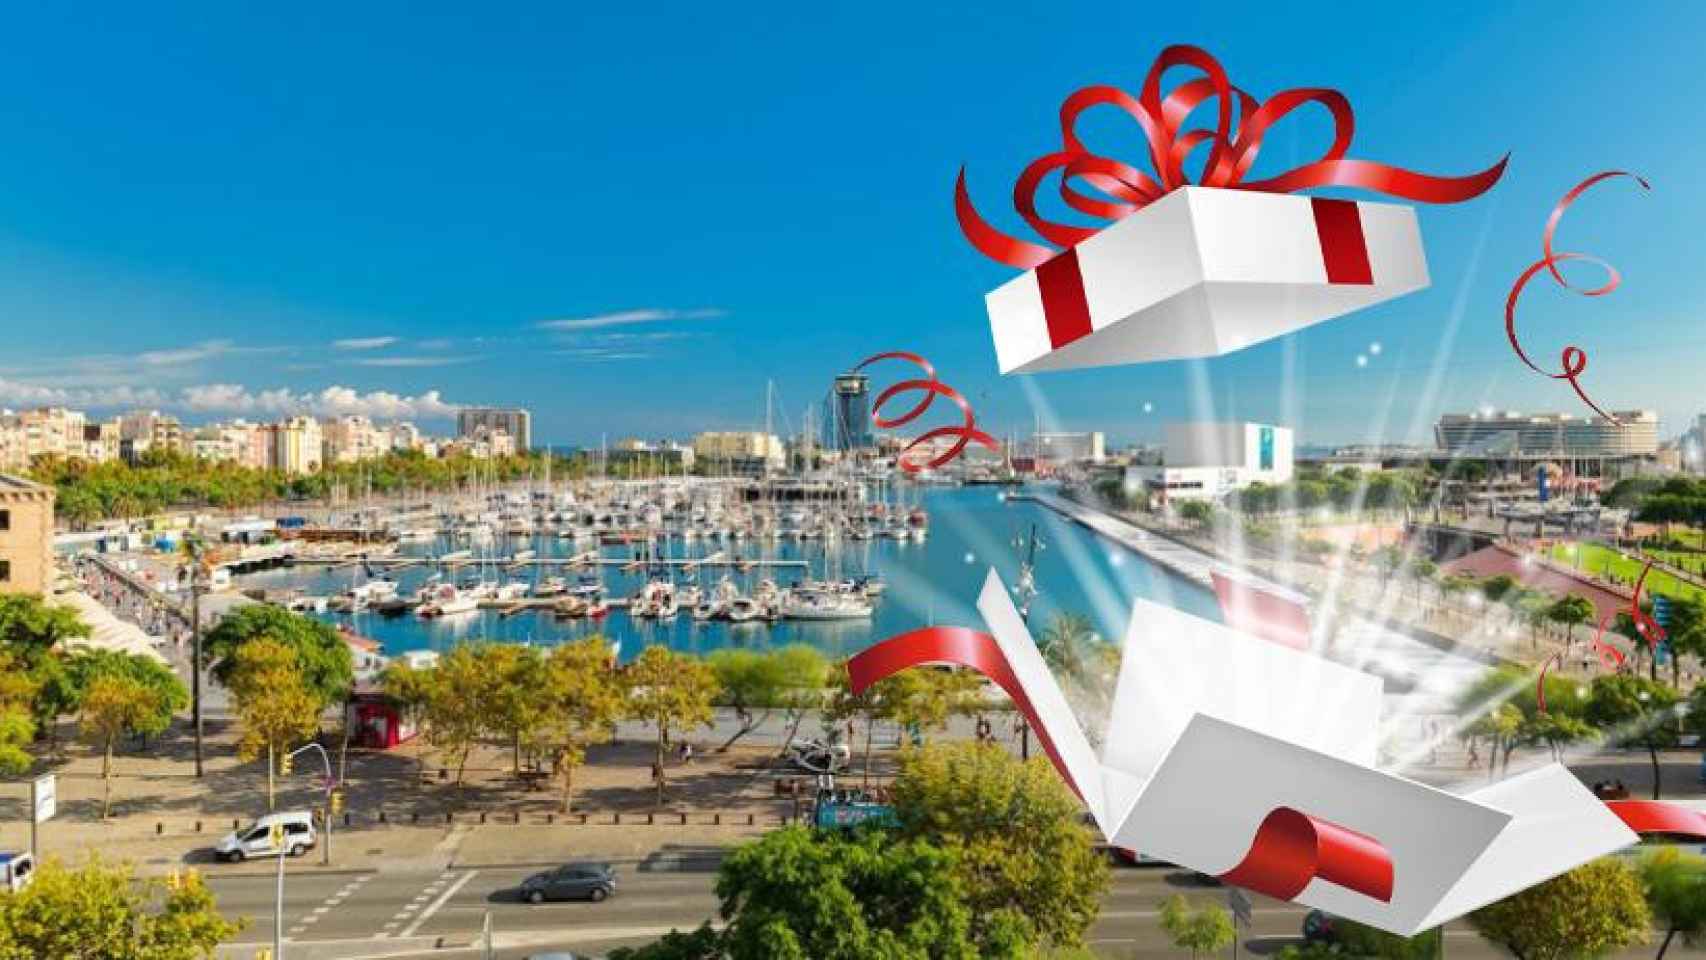 El Port de Barcelona inicia una campaña de recogida de juguetes / CG